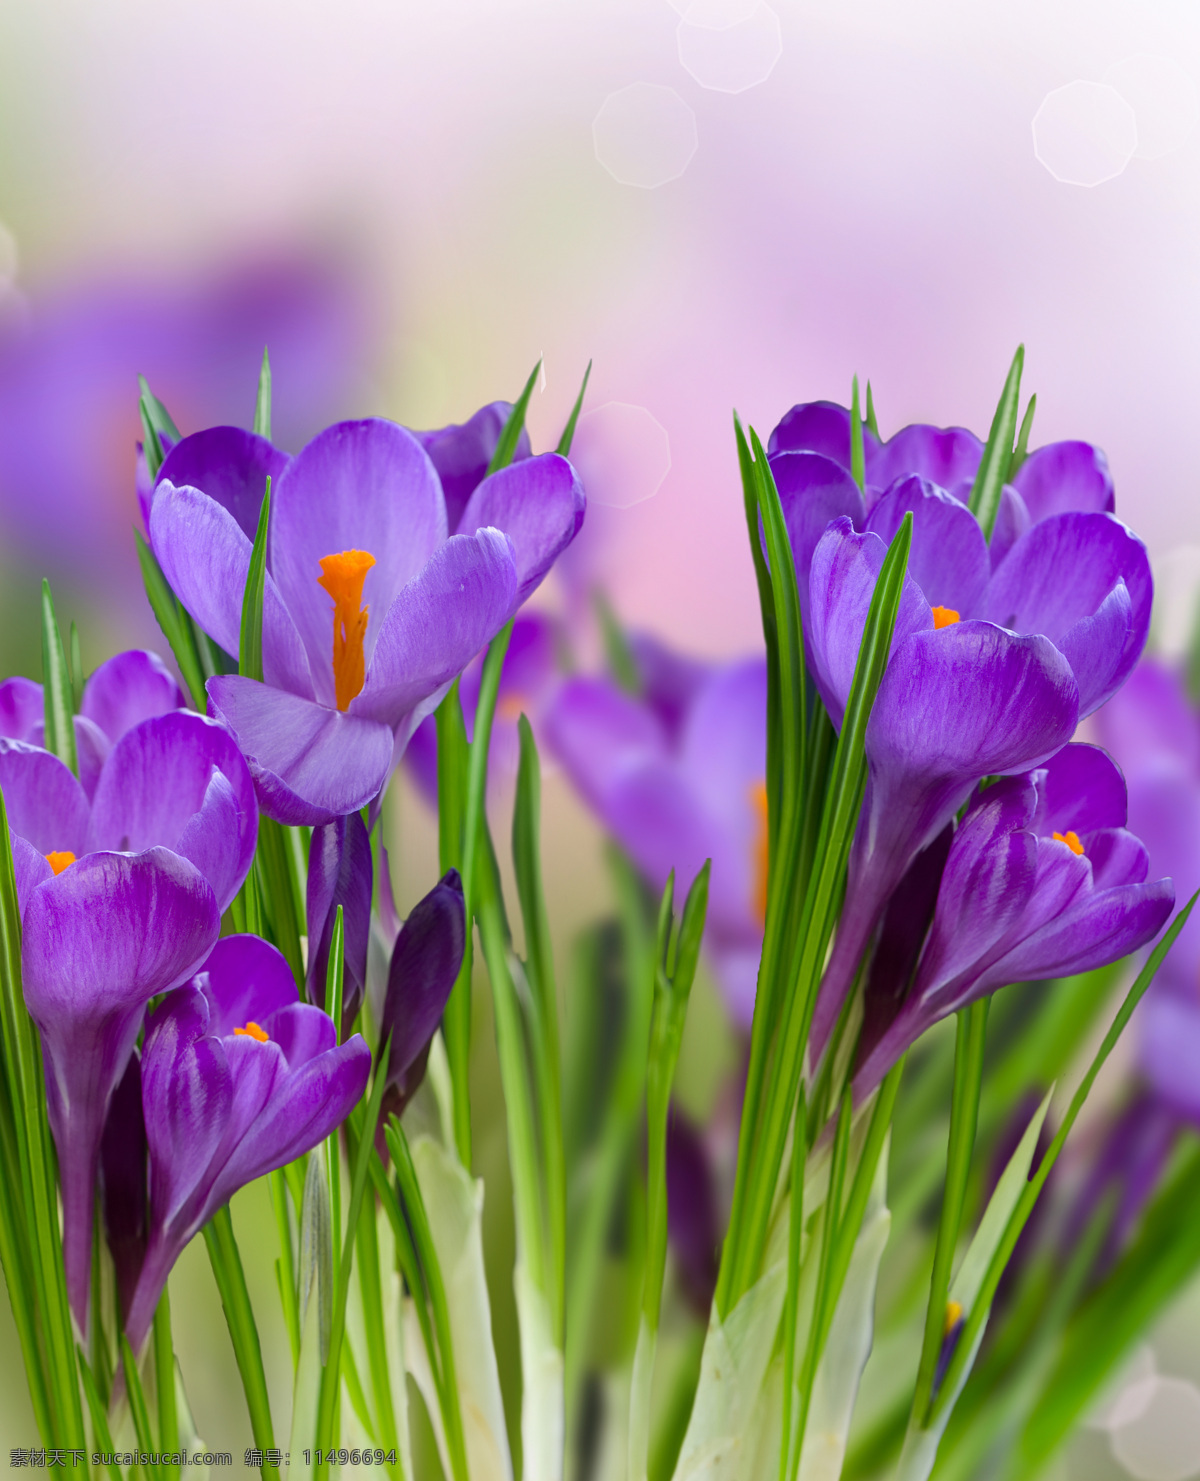 美丽鲜花背景 美丽鲜花 春天花朵 春天背景 花朵 花卉 鲜花背景 梦幻背景 背景图片 花草树木 生物世界 紫色